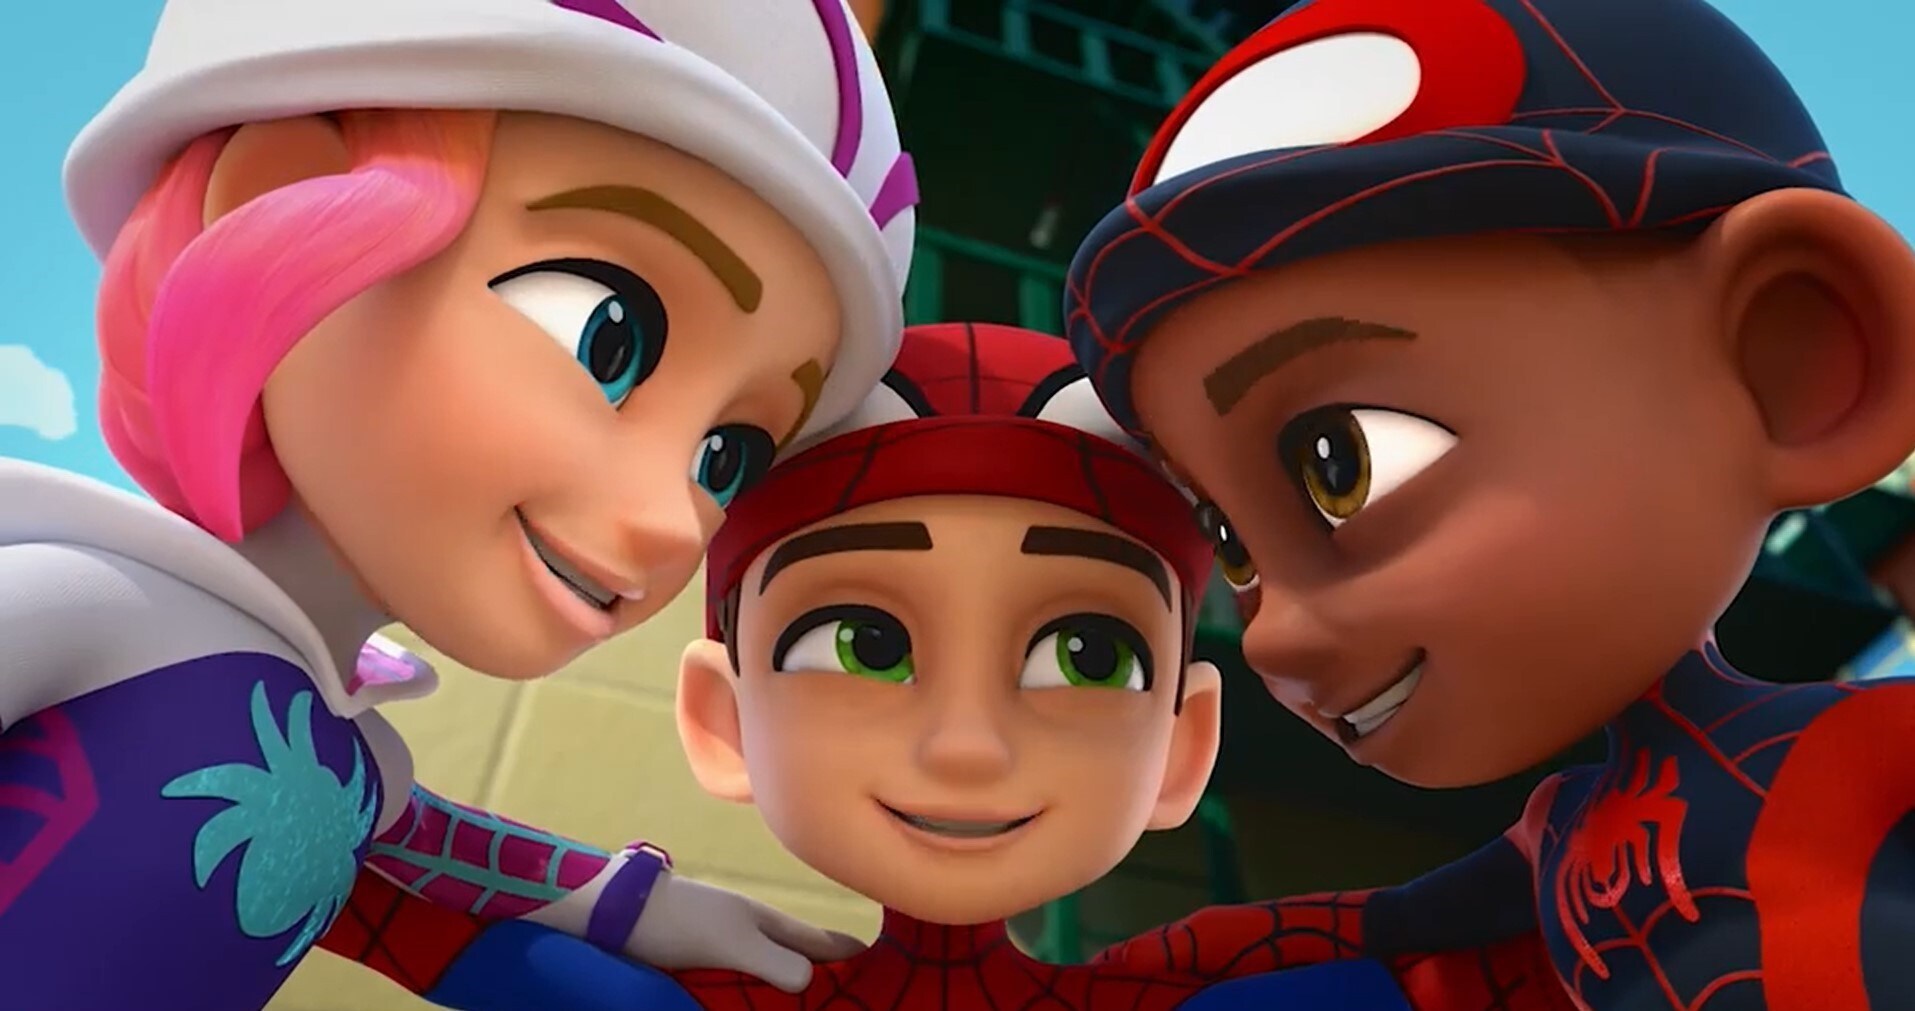 Disney+ Latinoamérica on X: La temporada 2 de Spidey y sus sorprendentes  amigos llega a fin de año a #DisneyPlus con nuevos heroes y villanos entre  ellos Iron Man, Ant-Man, Wasp y